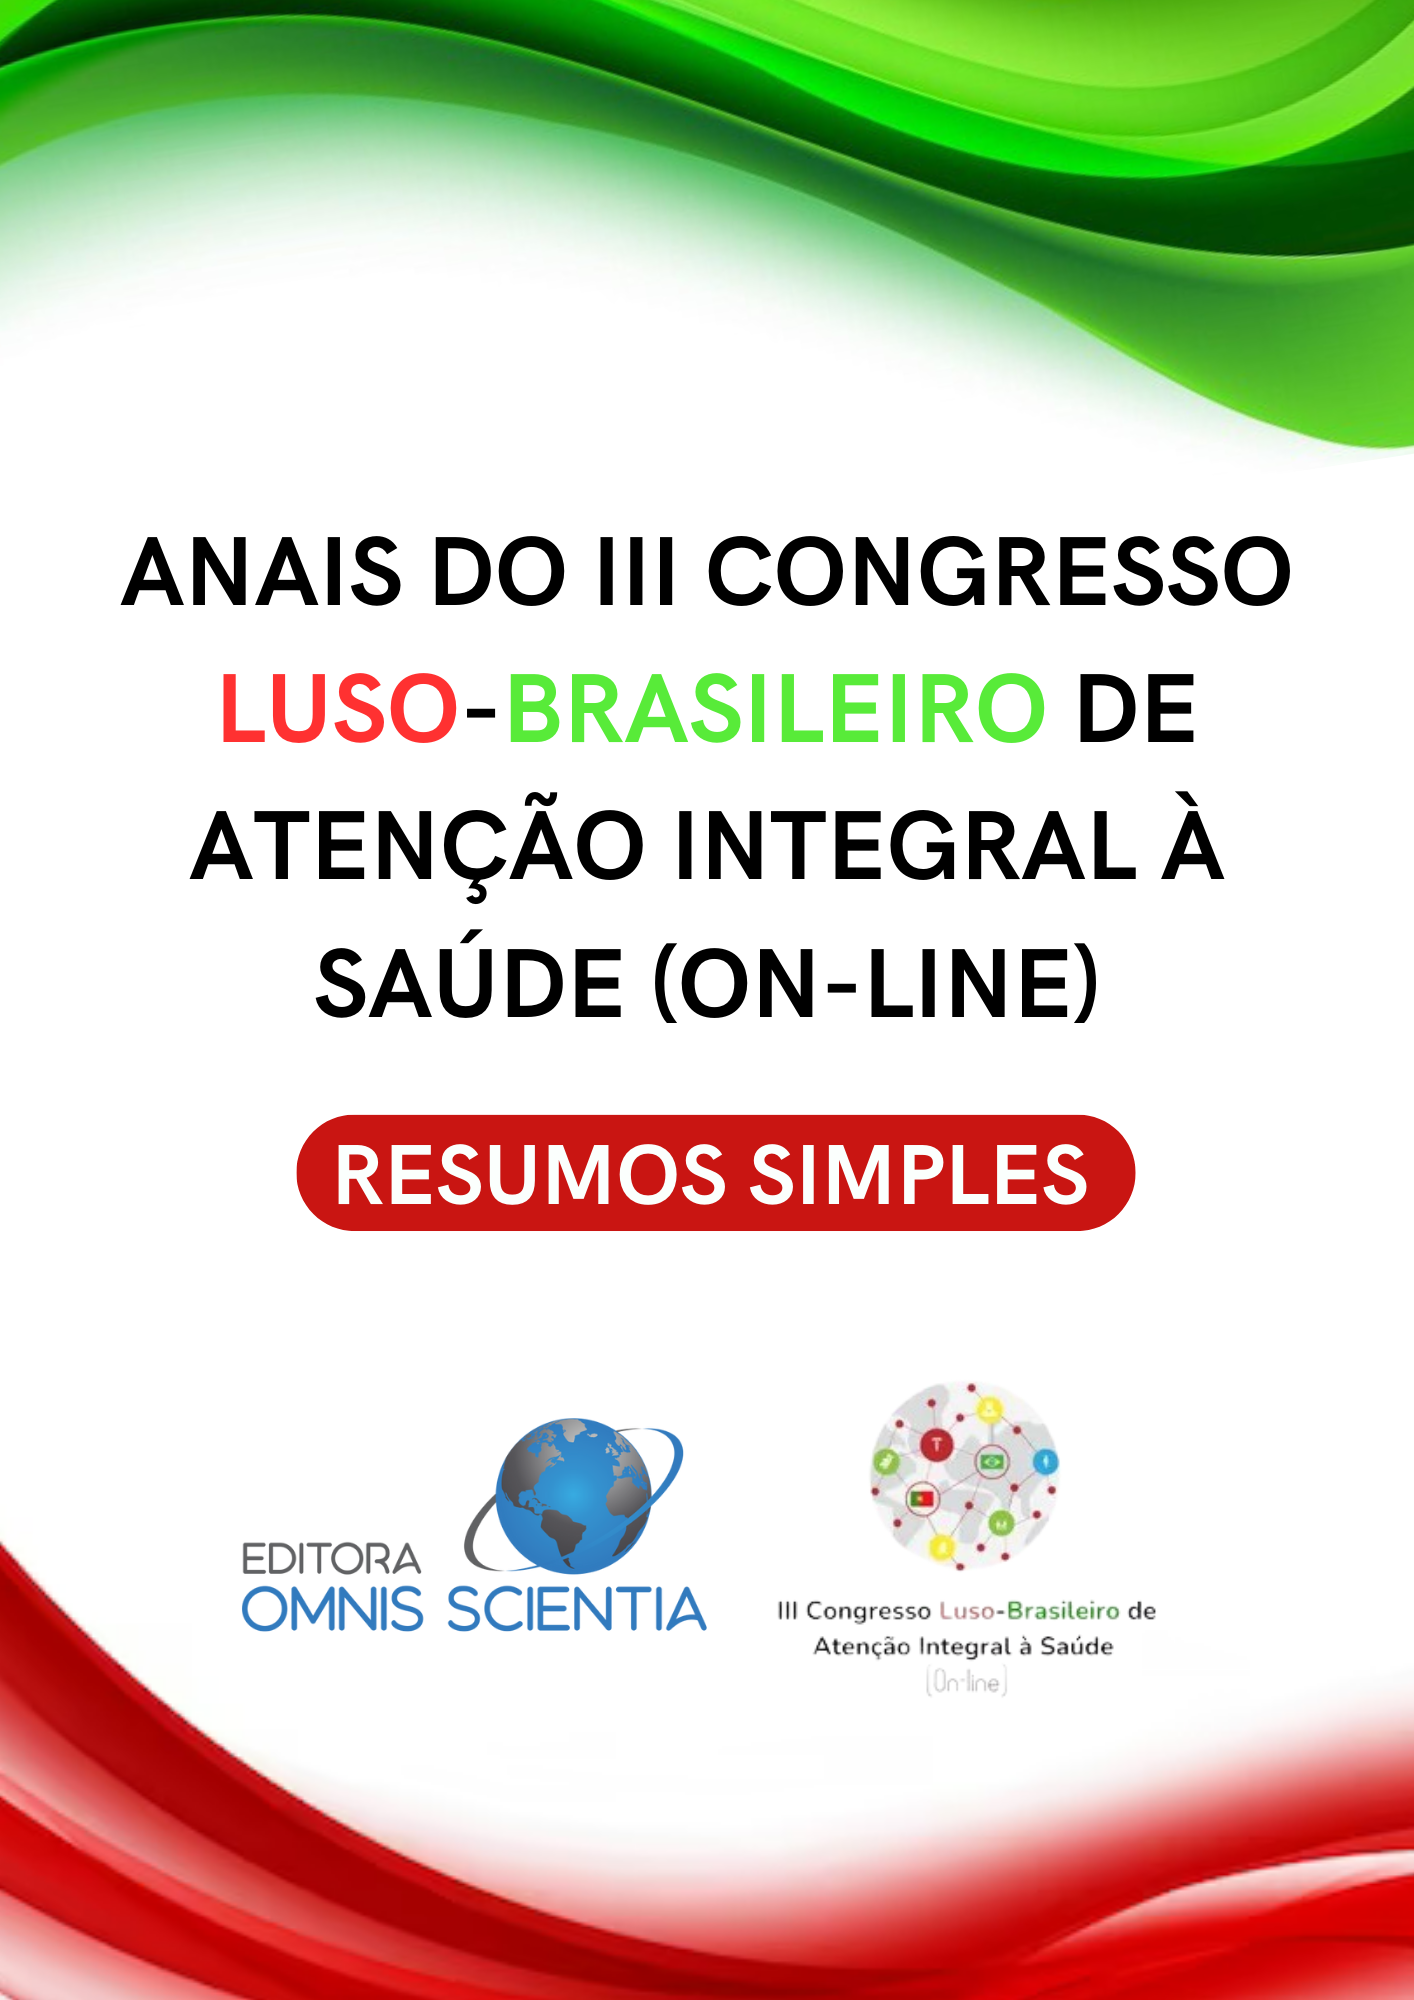 ANAIS DO III CONGRESSO LUSO-BRASILEIRO DE ATENÇÃO INTEGRAL À SAÚDE (ON-LINE) – RESUMOS SIMPLES